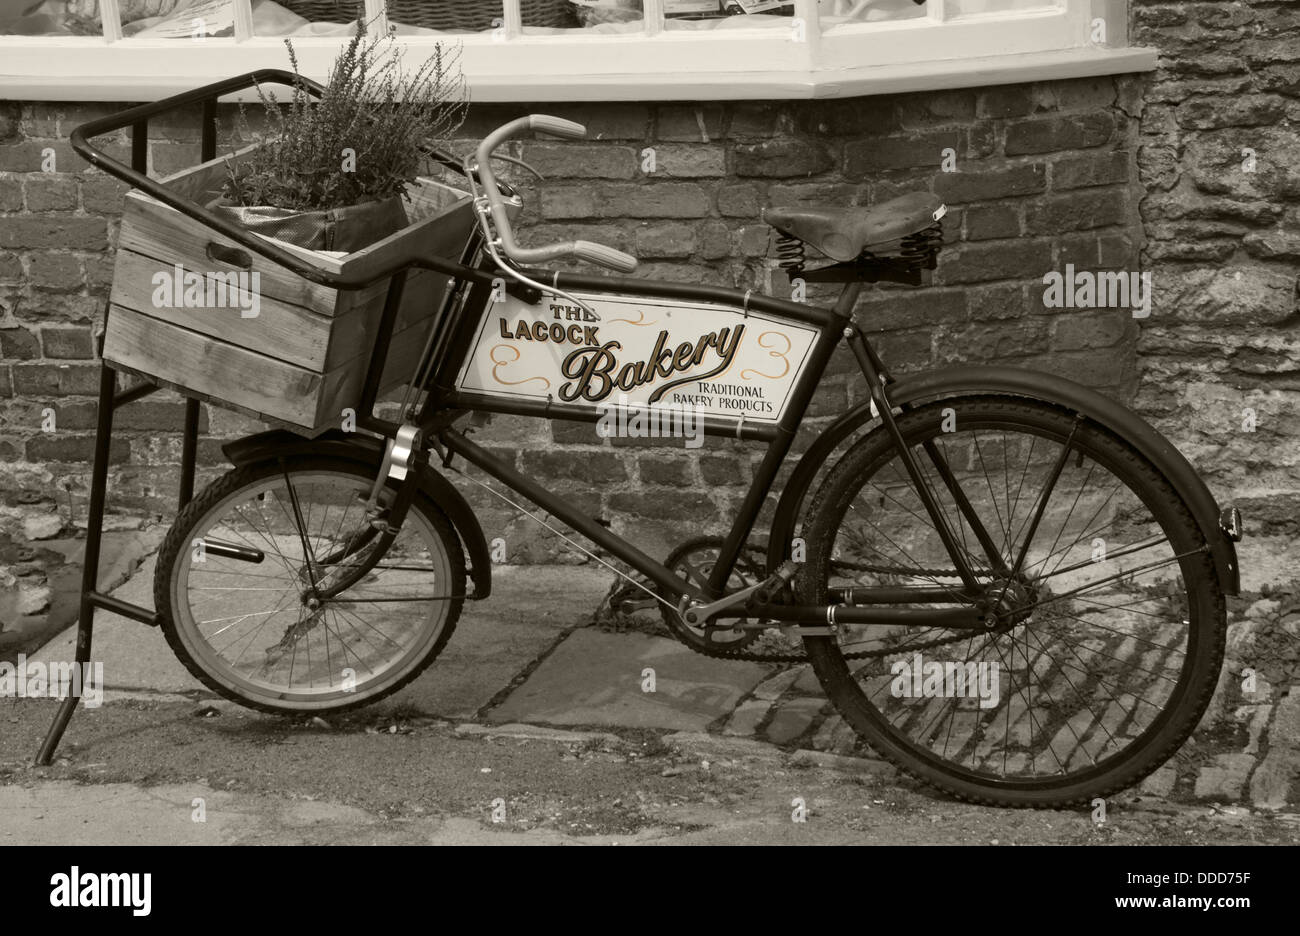 Le vélo de livraison de Lacock Bakery, village de Lacock, Wiltshire, Angleterre, Royaume-Uni Banque D'Images